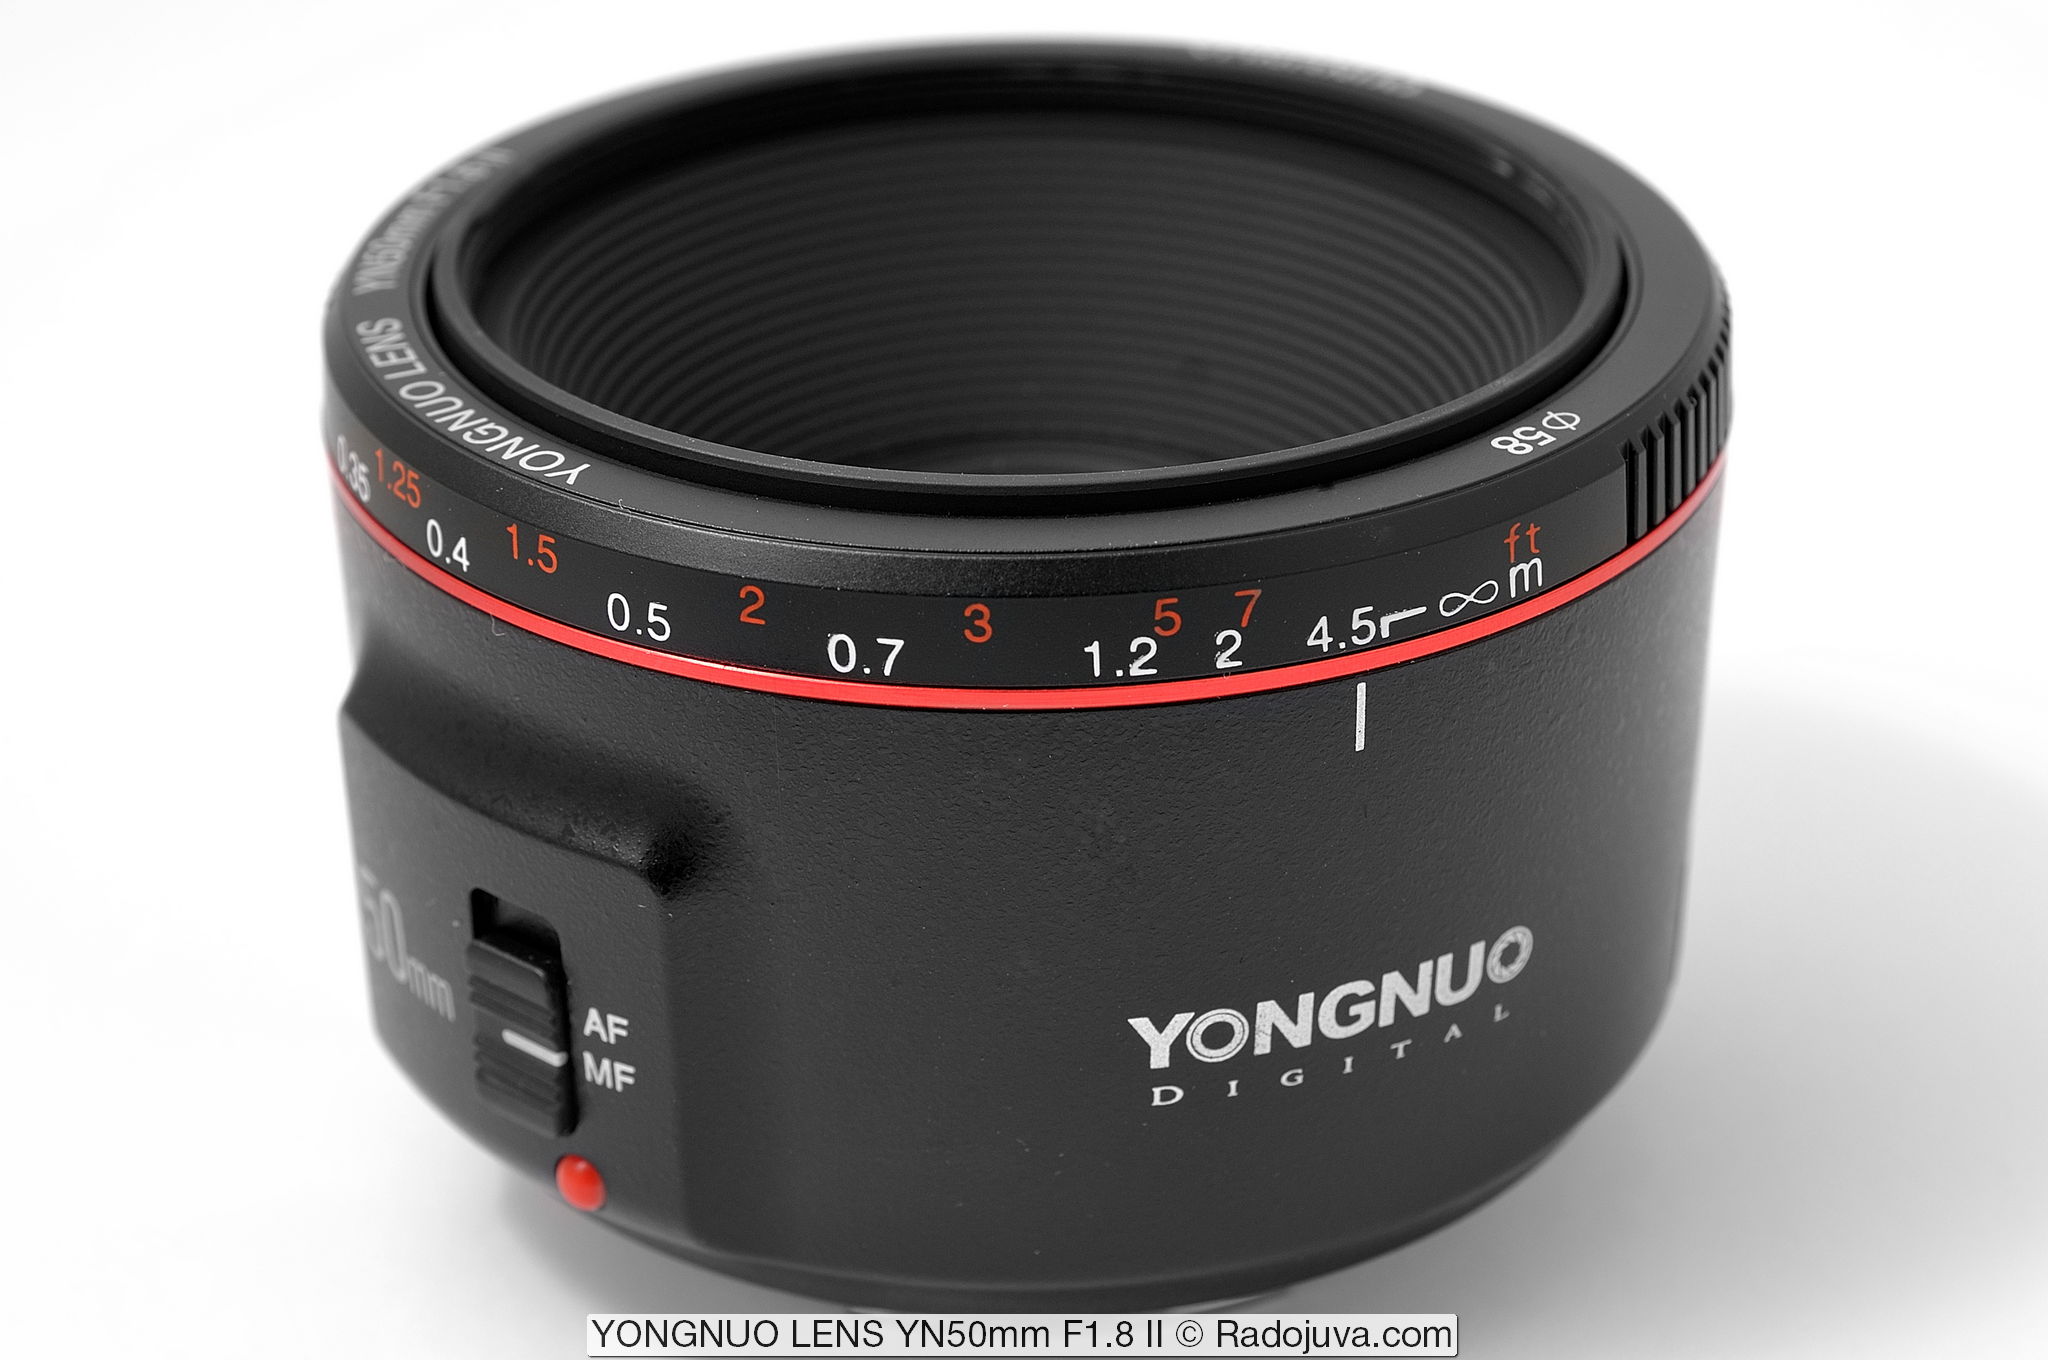 YONGNUO-LENS YN50mm F1.8 II